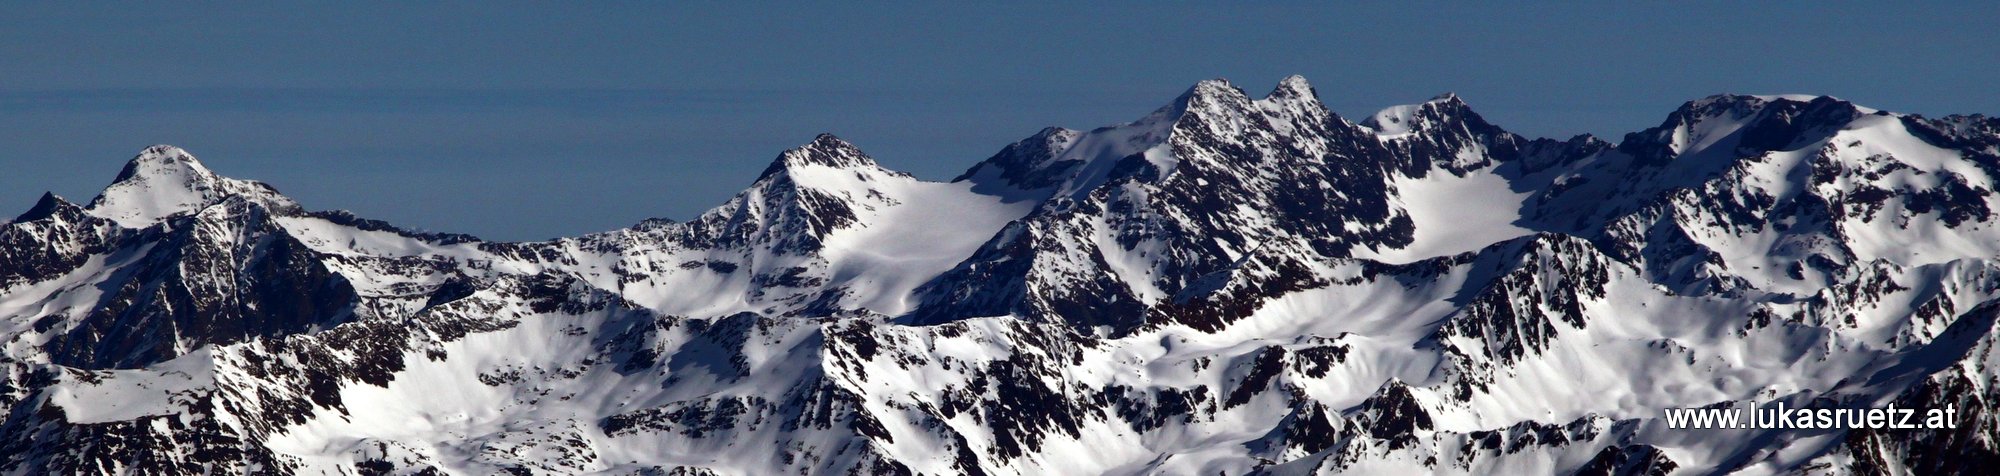 Schaufelspitze ganz links bis Sonklarspitze ganz rechts